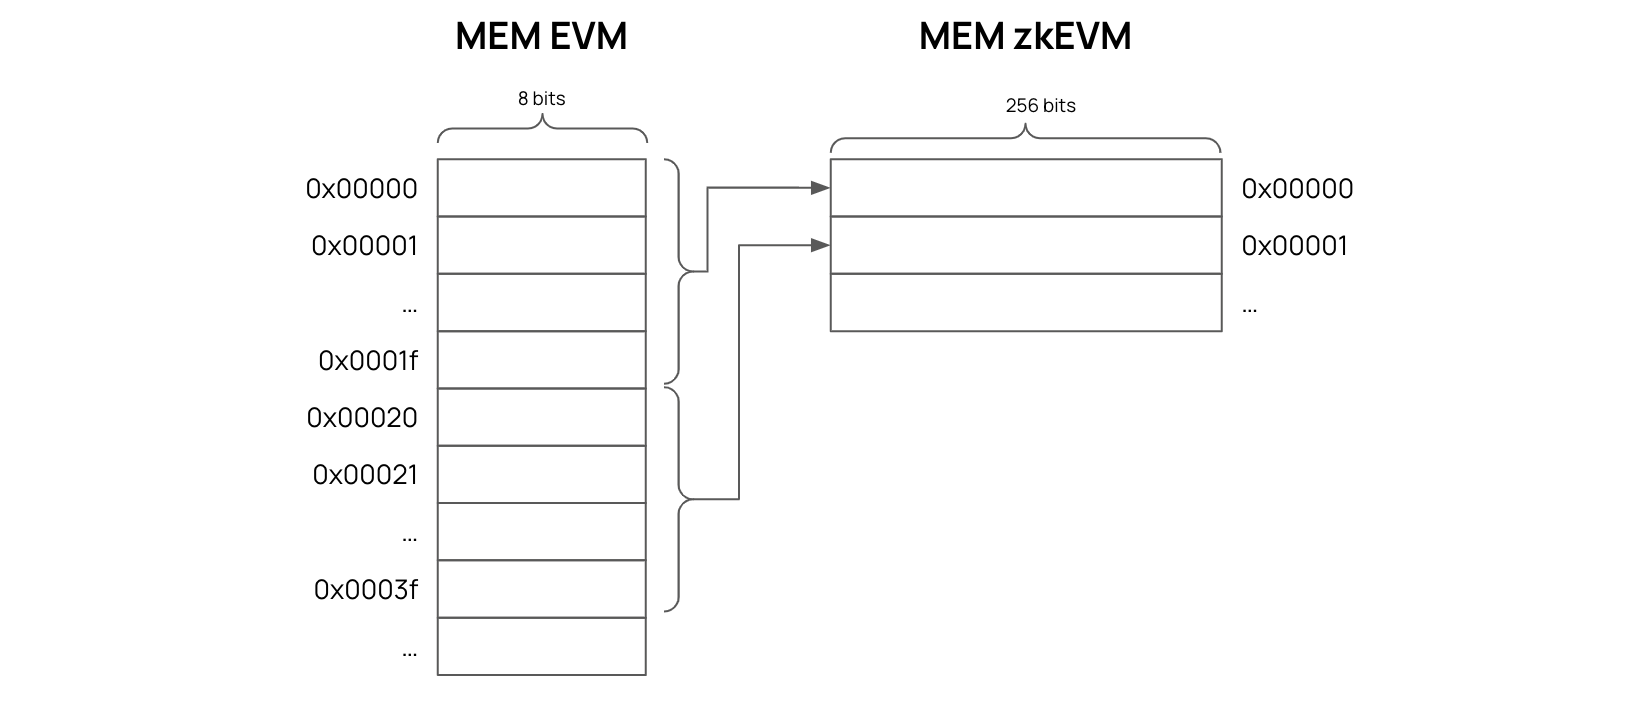 Aligning the EVM Memory to the zkEVM Memory